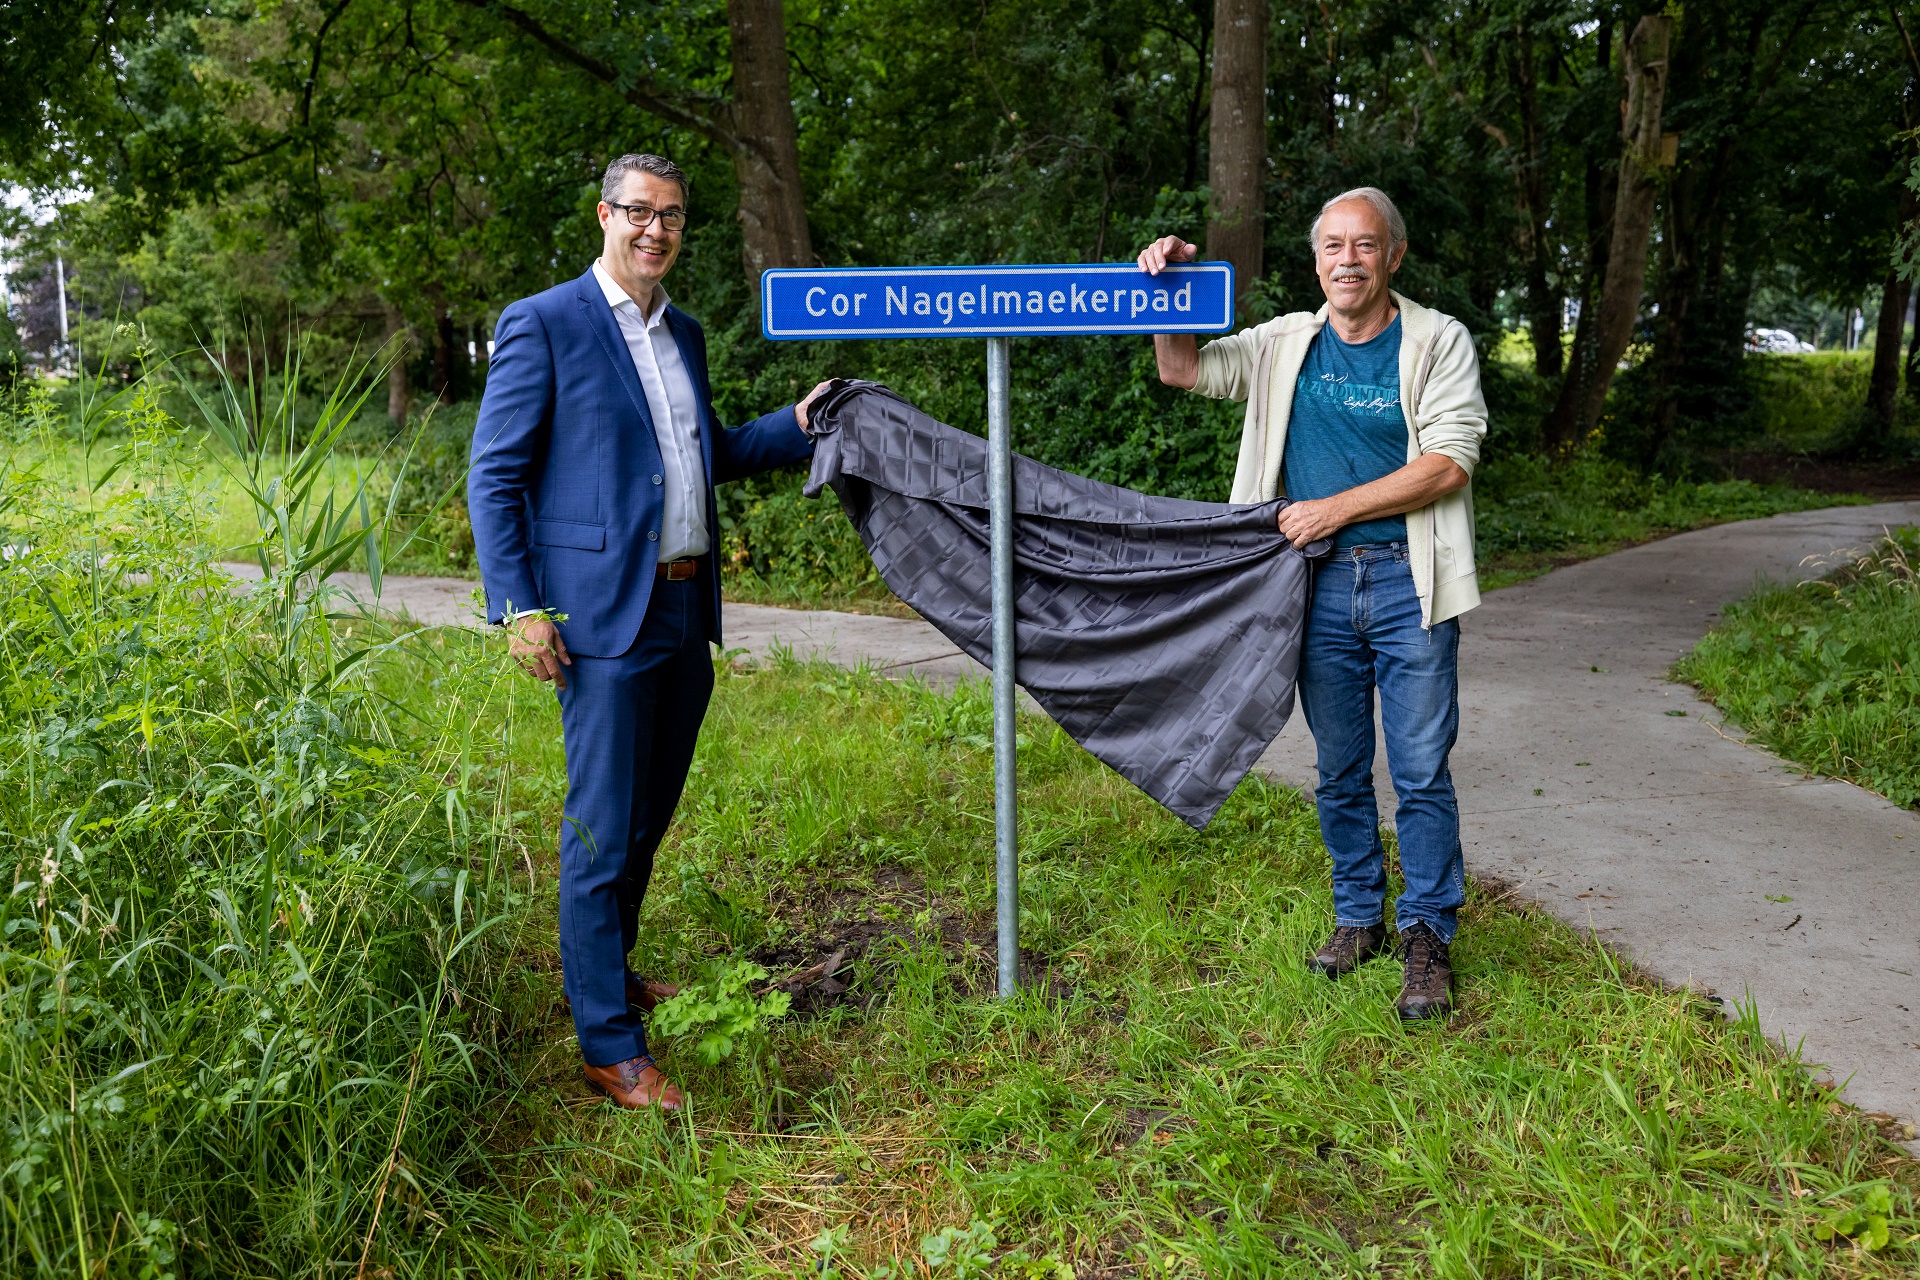 Gemeente eert Cor Nagelmaeker met bord aan vernieuwde Heemtuin Kampen